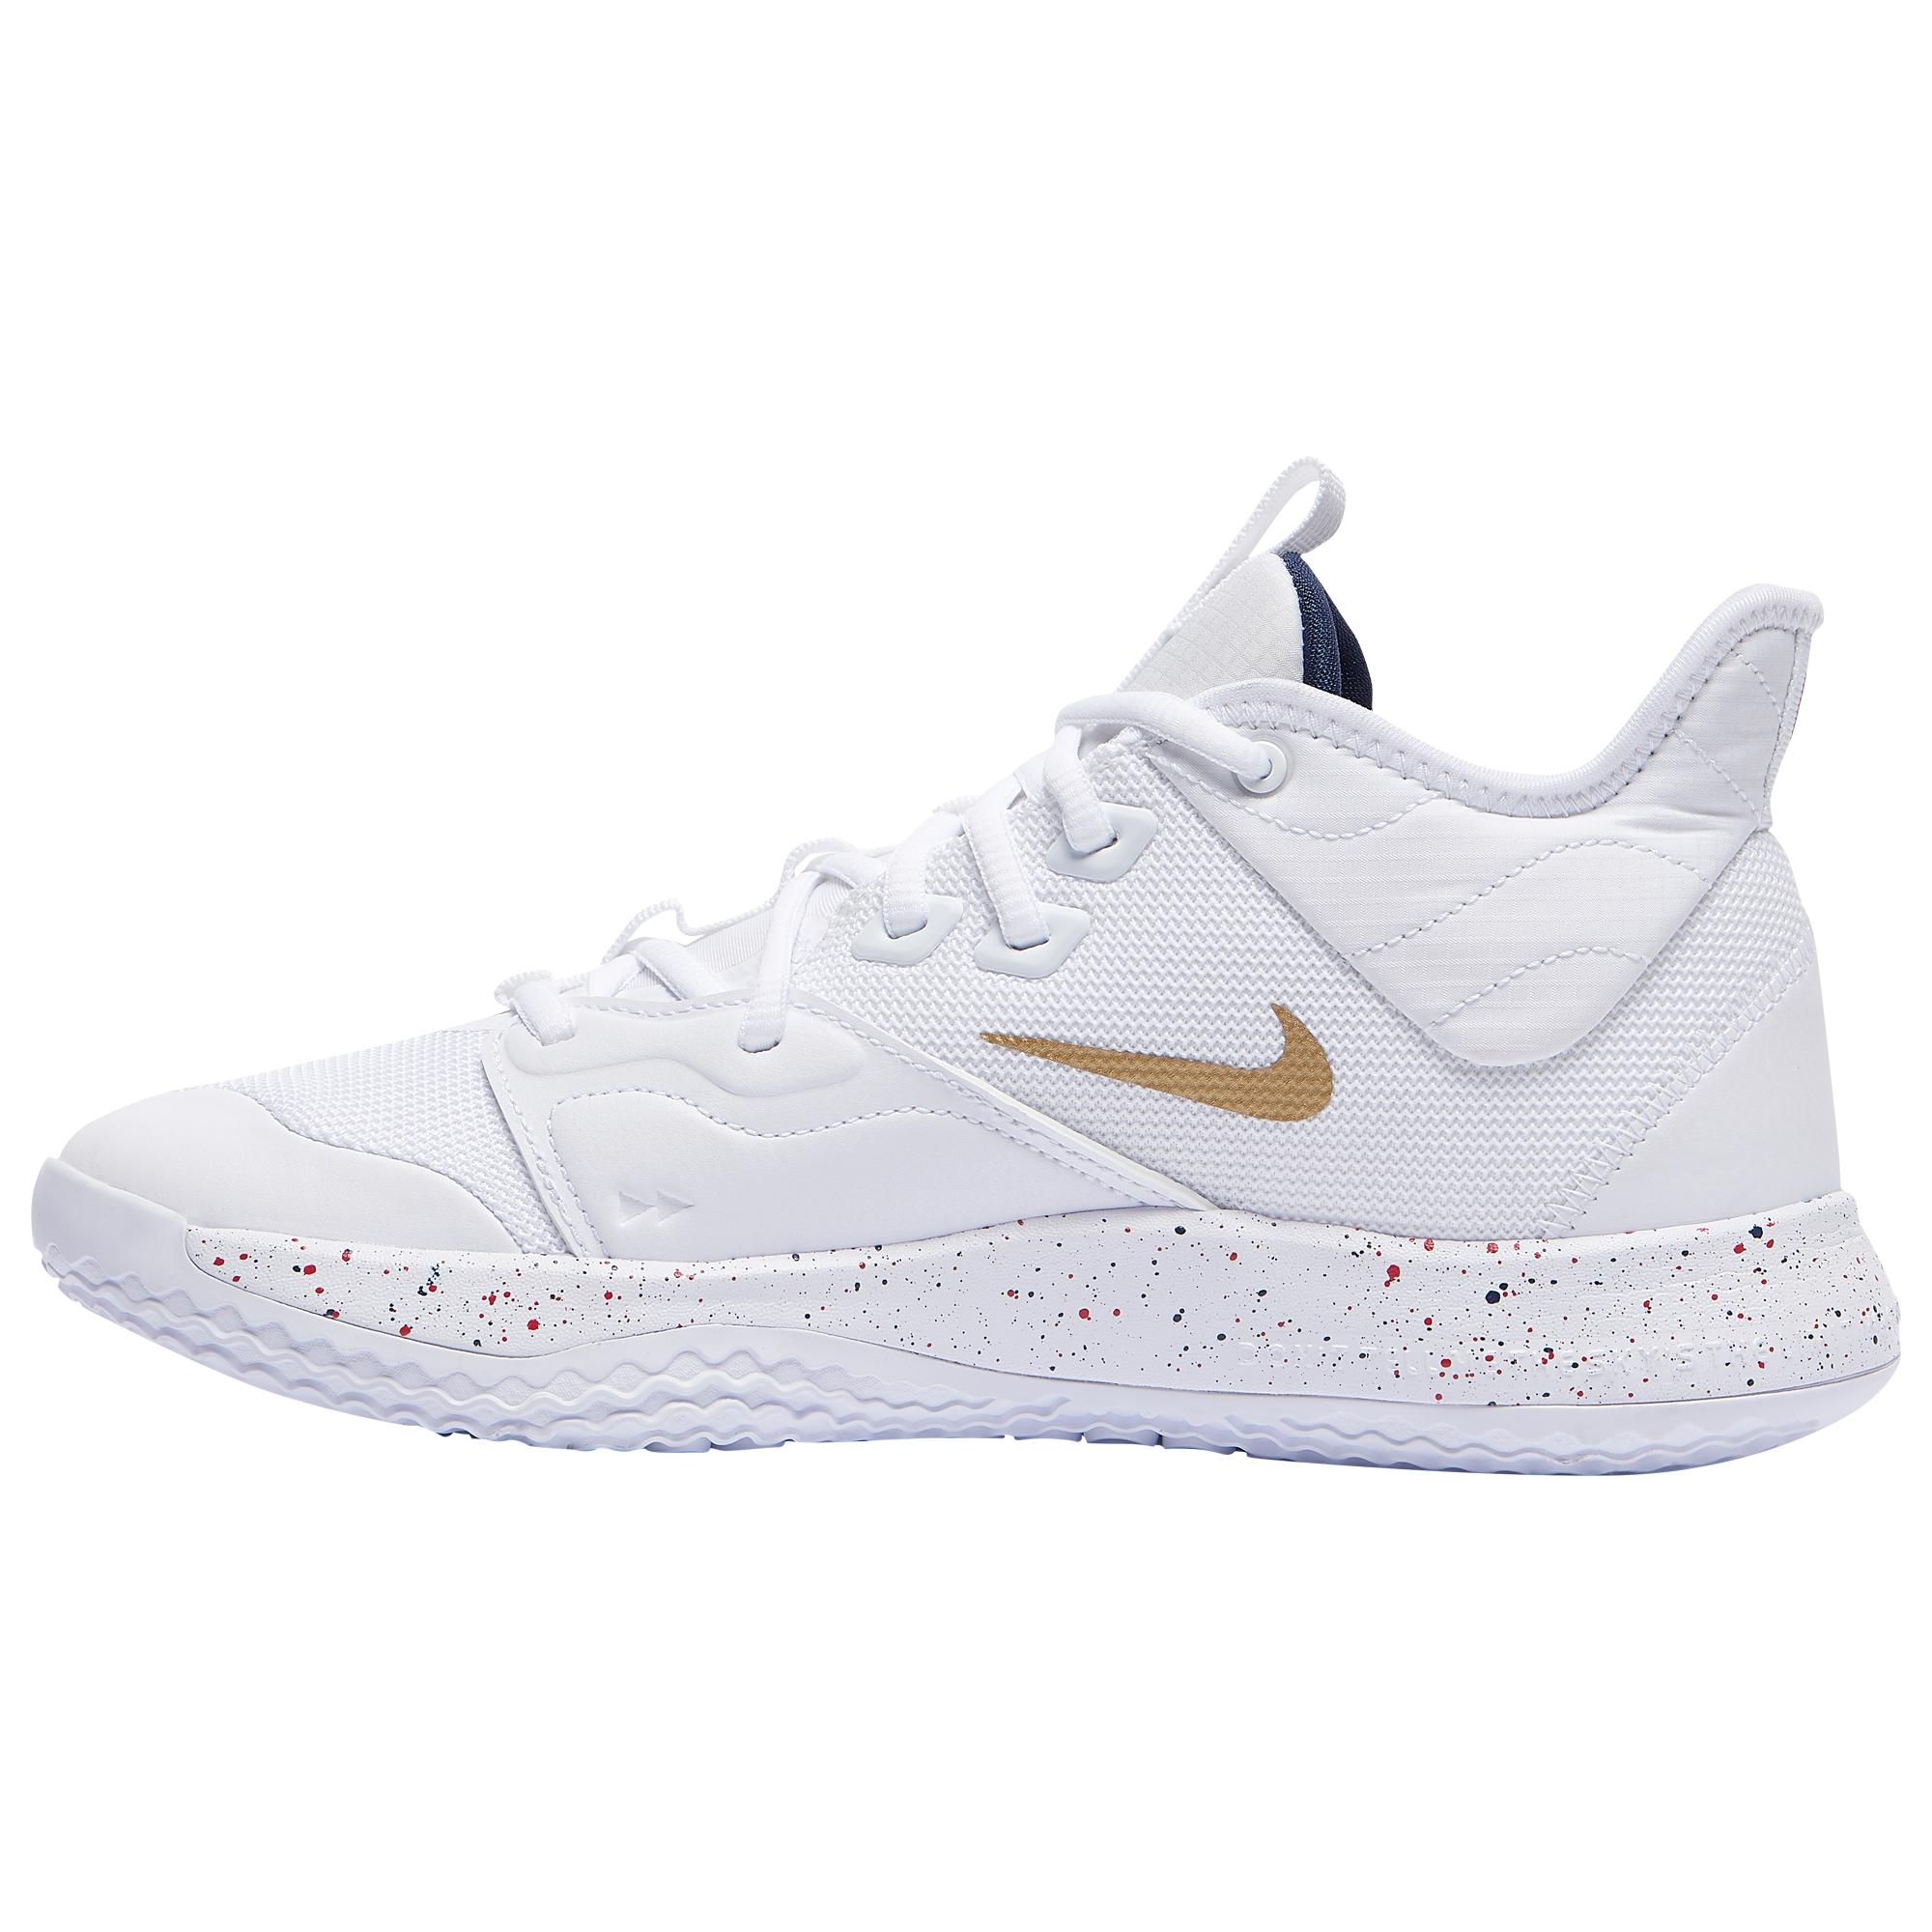 Nike Pg 3 Basketball Shoe in White/Gold (White) for Men - Lyst